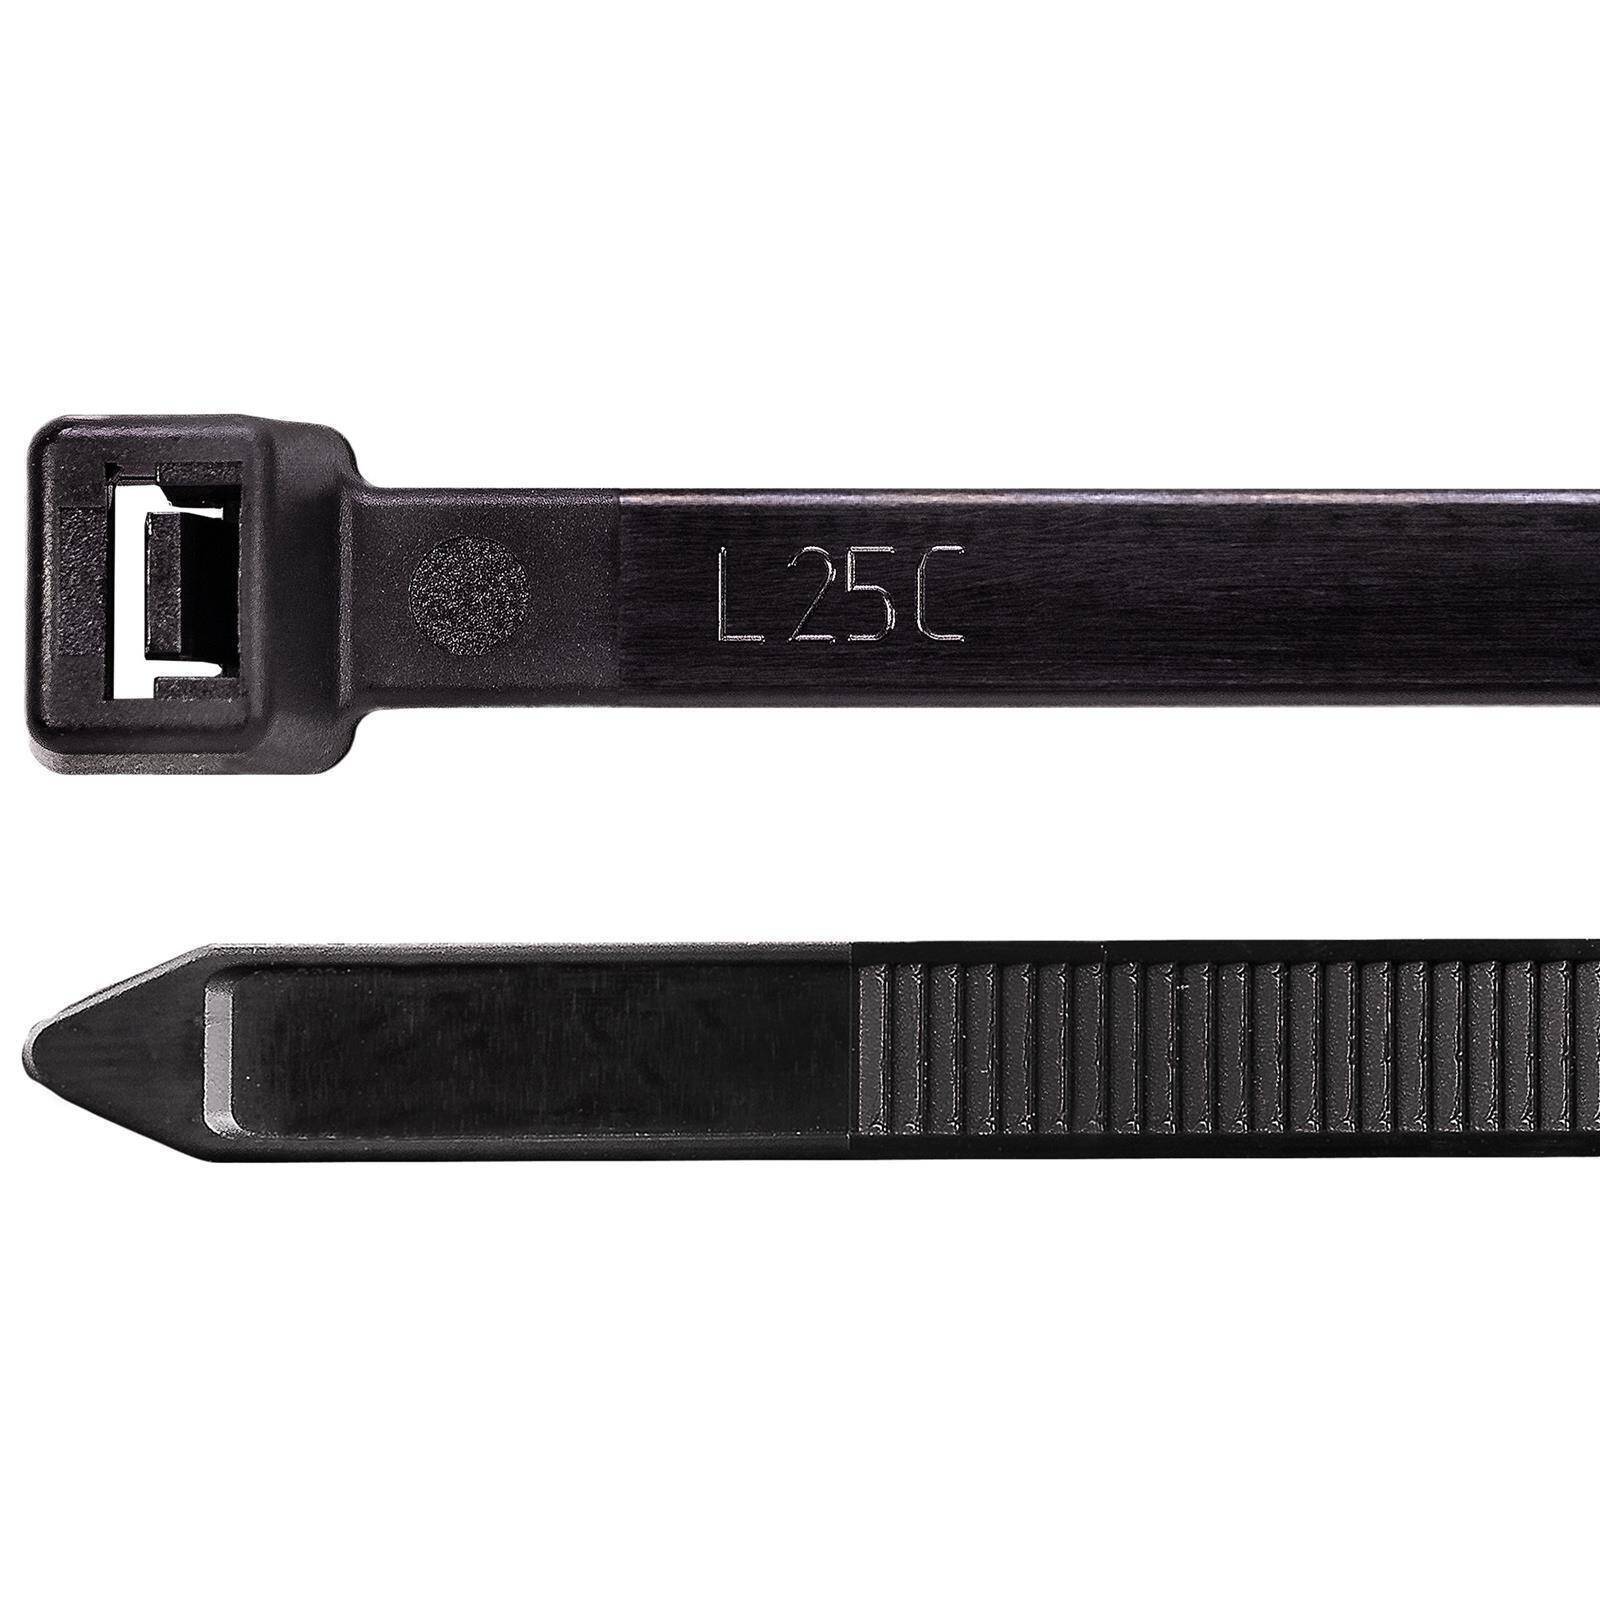 100 Kabelbinder 7,6 x 200 mm LÖSBAR schwarz Profi UV beständig Kabel Strapse